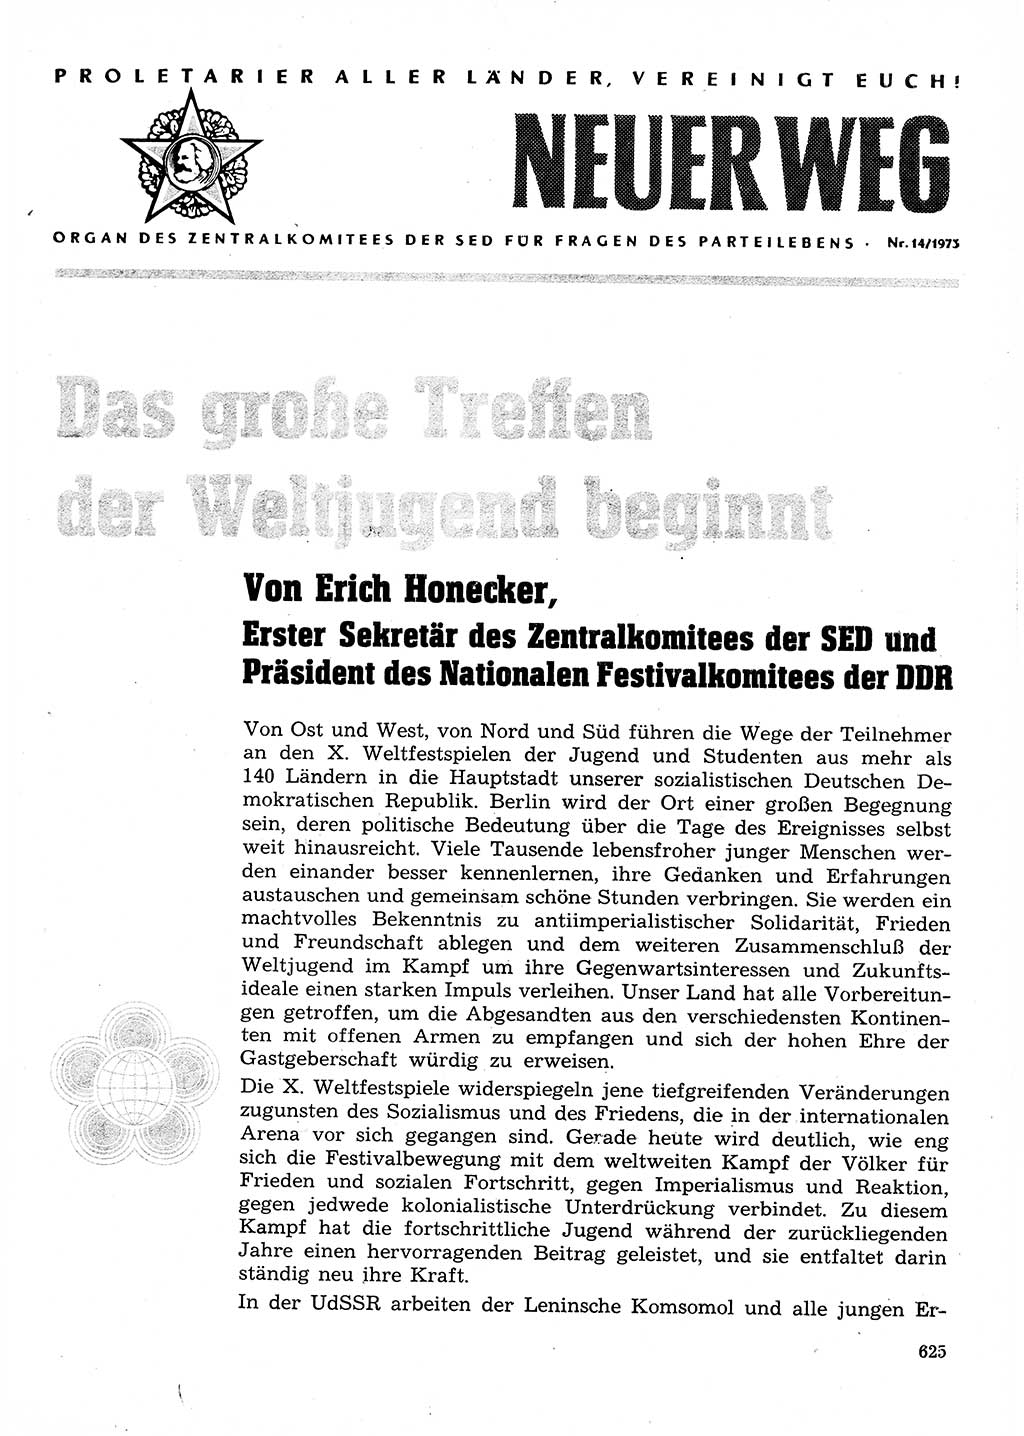 Neuer Weg (NW), Organ des Zentralkomitees (ZK) der SED (Sozialistische Einheitspartei Deutschlands) für Fragen des Parteilebens, 28. Jahrgang [Deutsche Demokratische Republik (DDR)] 1973, Seite 625 (NW ZK SED DDR 1973, S. 625)